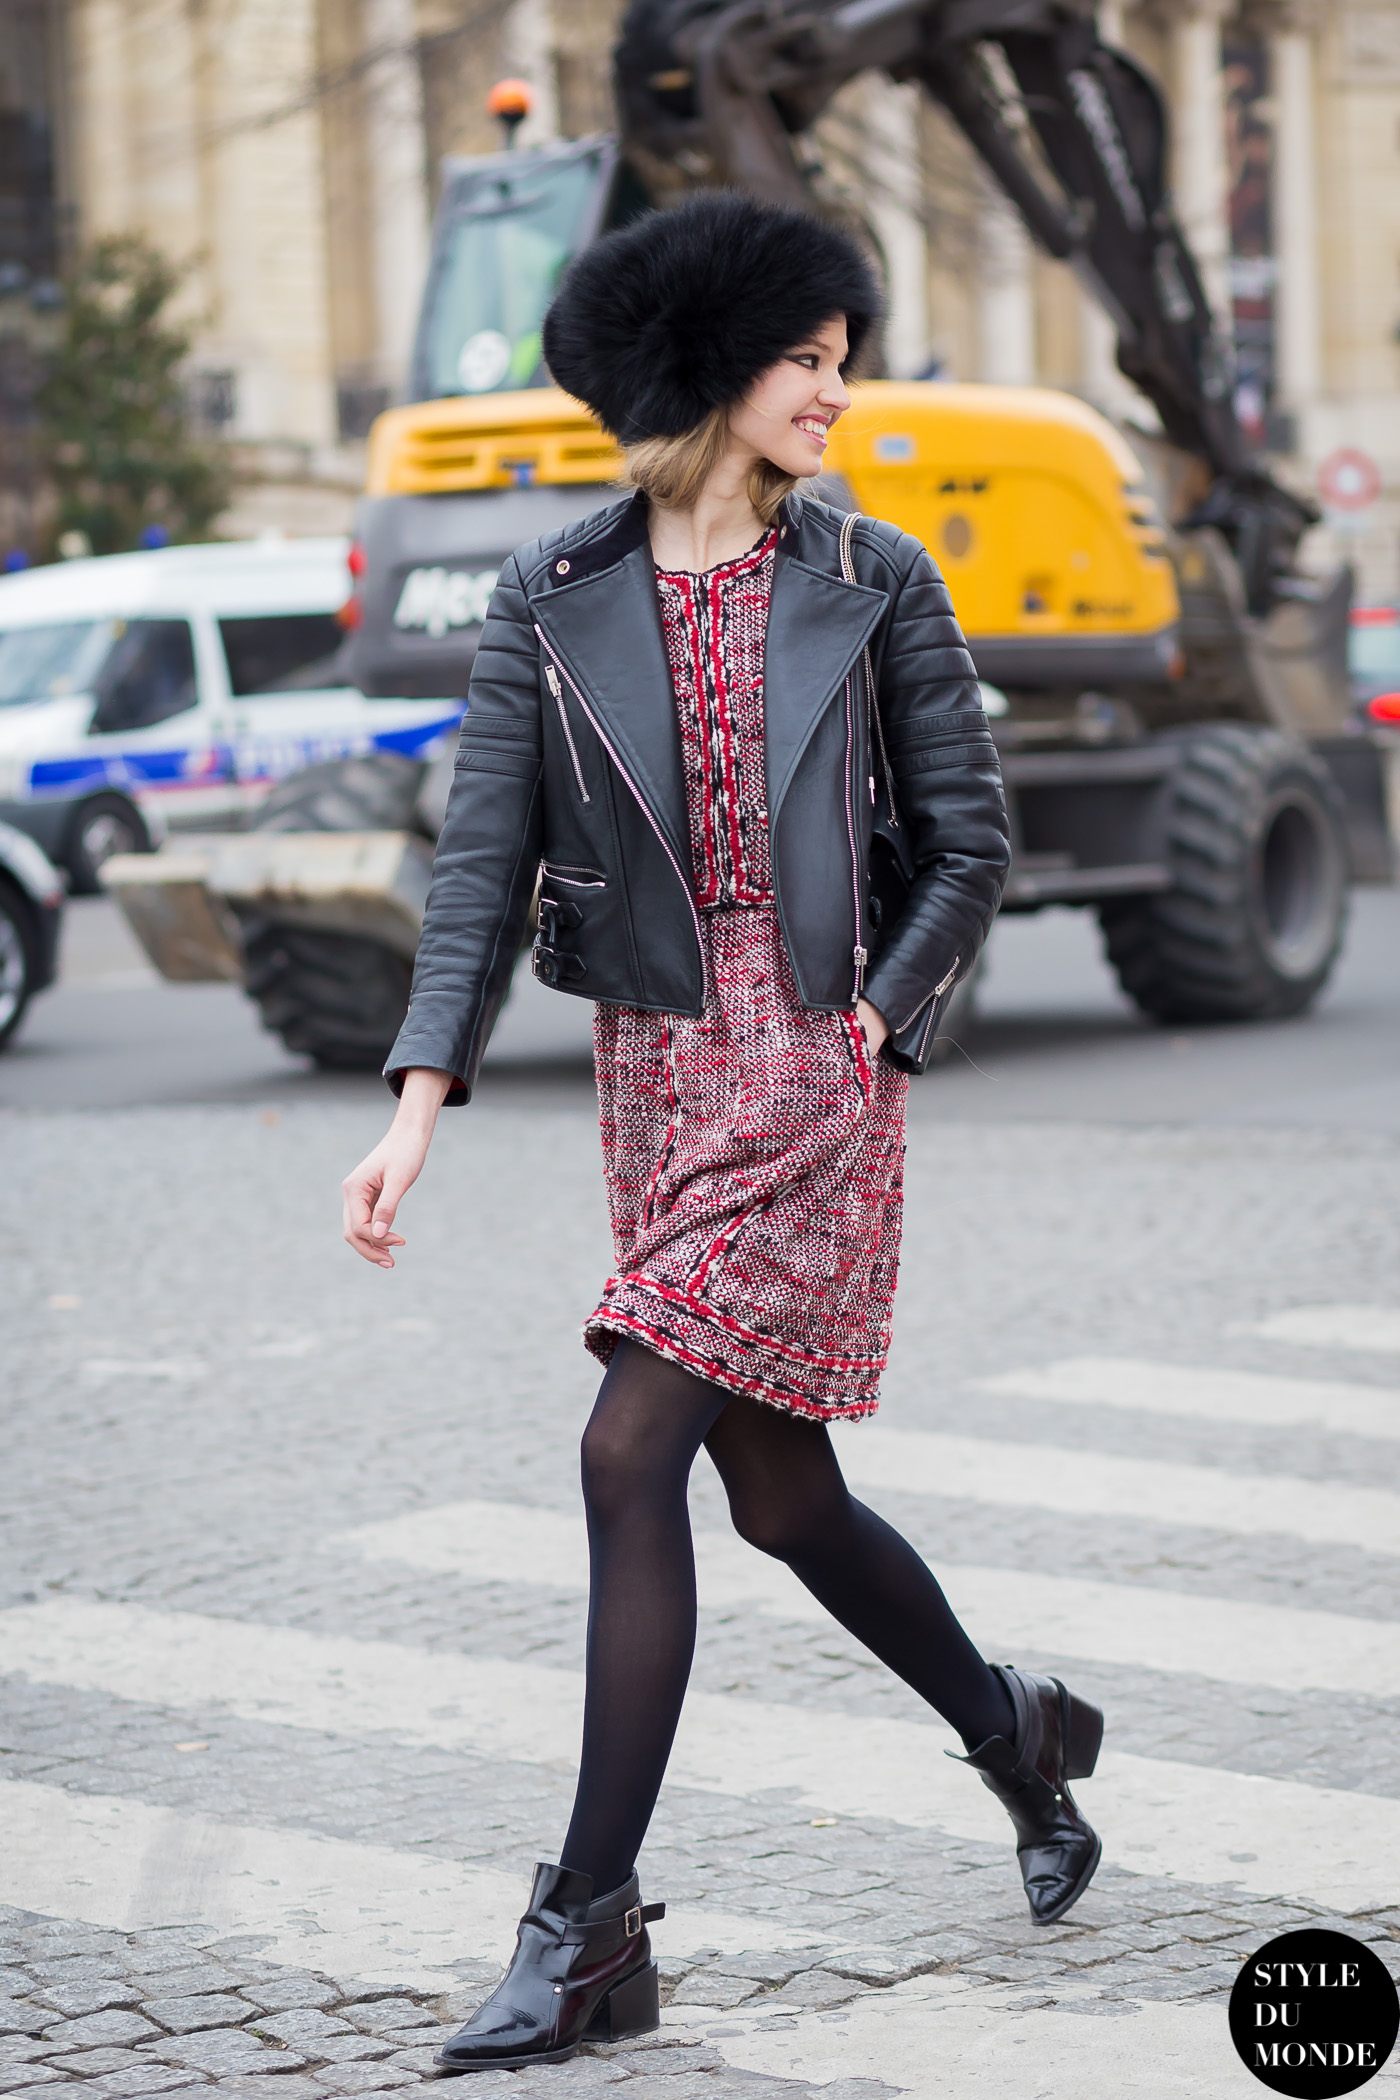 Paris Fashion Week FW 2015 Street Style: Sasha Luss - STYLE DU MONDE ...